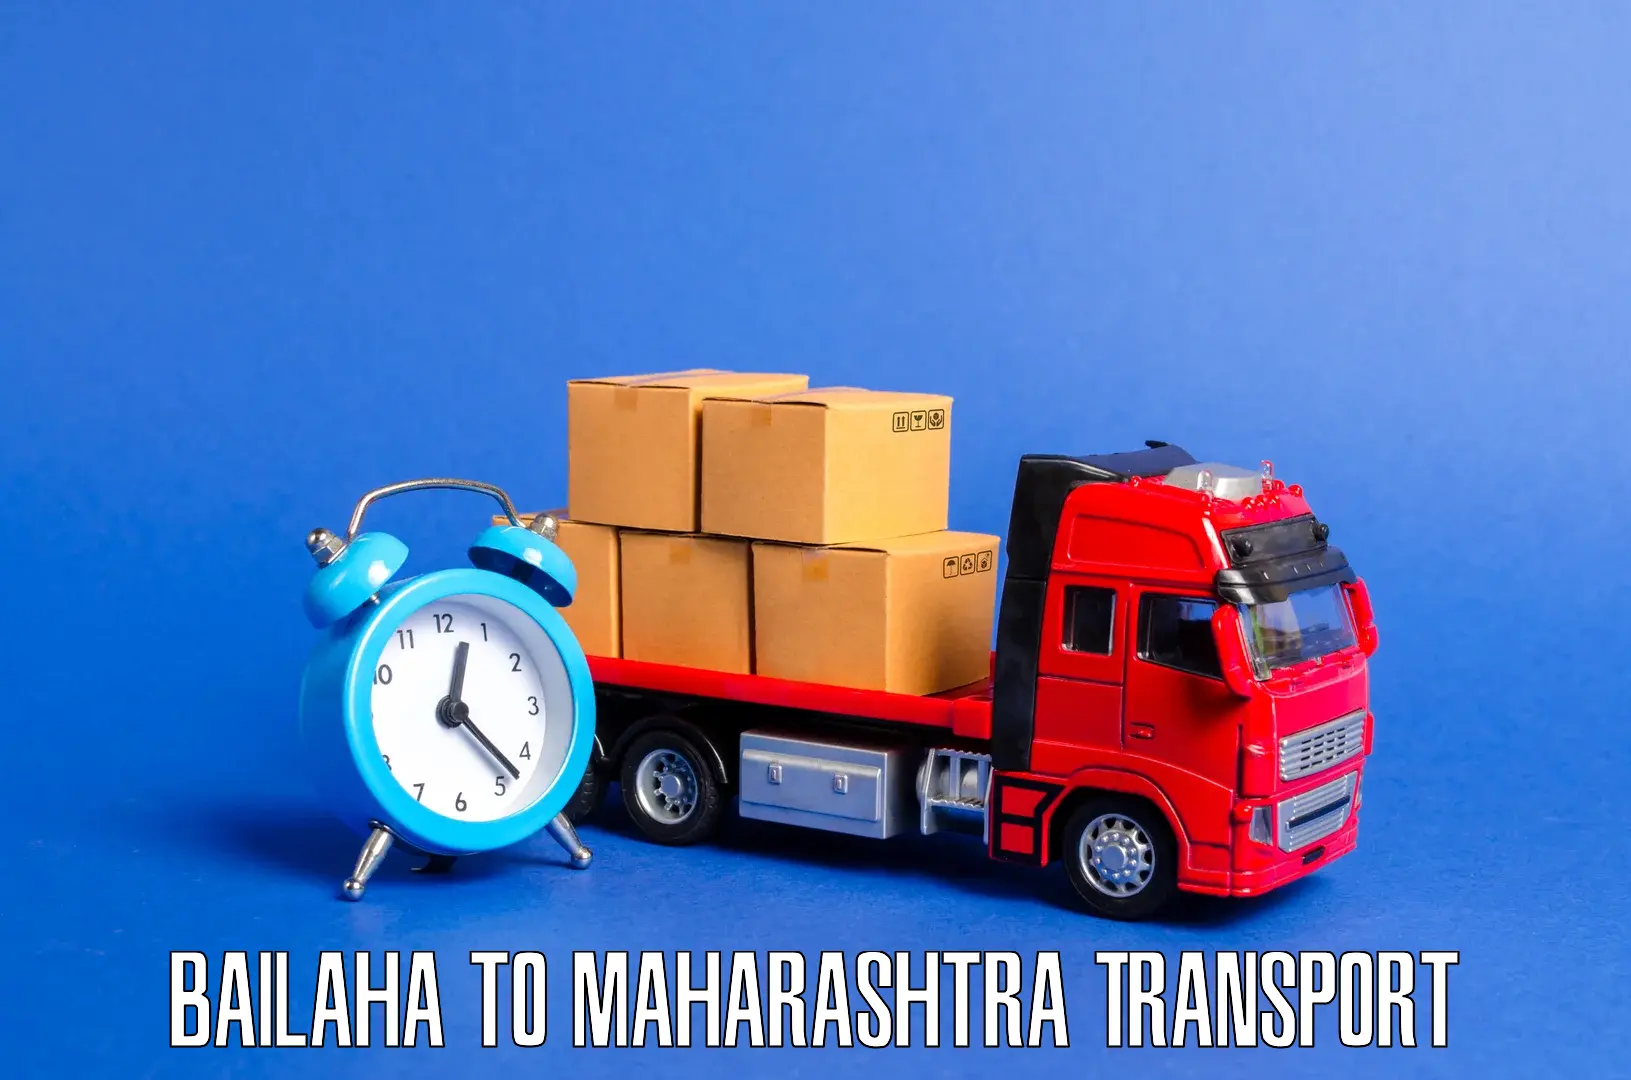 Daily transport service Bailaha to Maharashtra